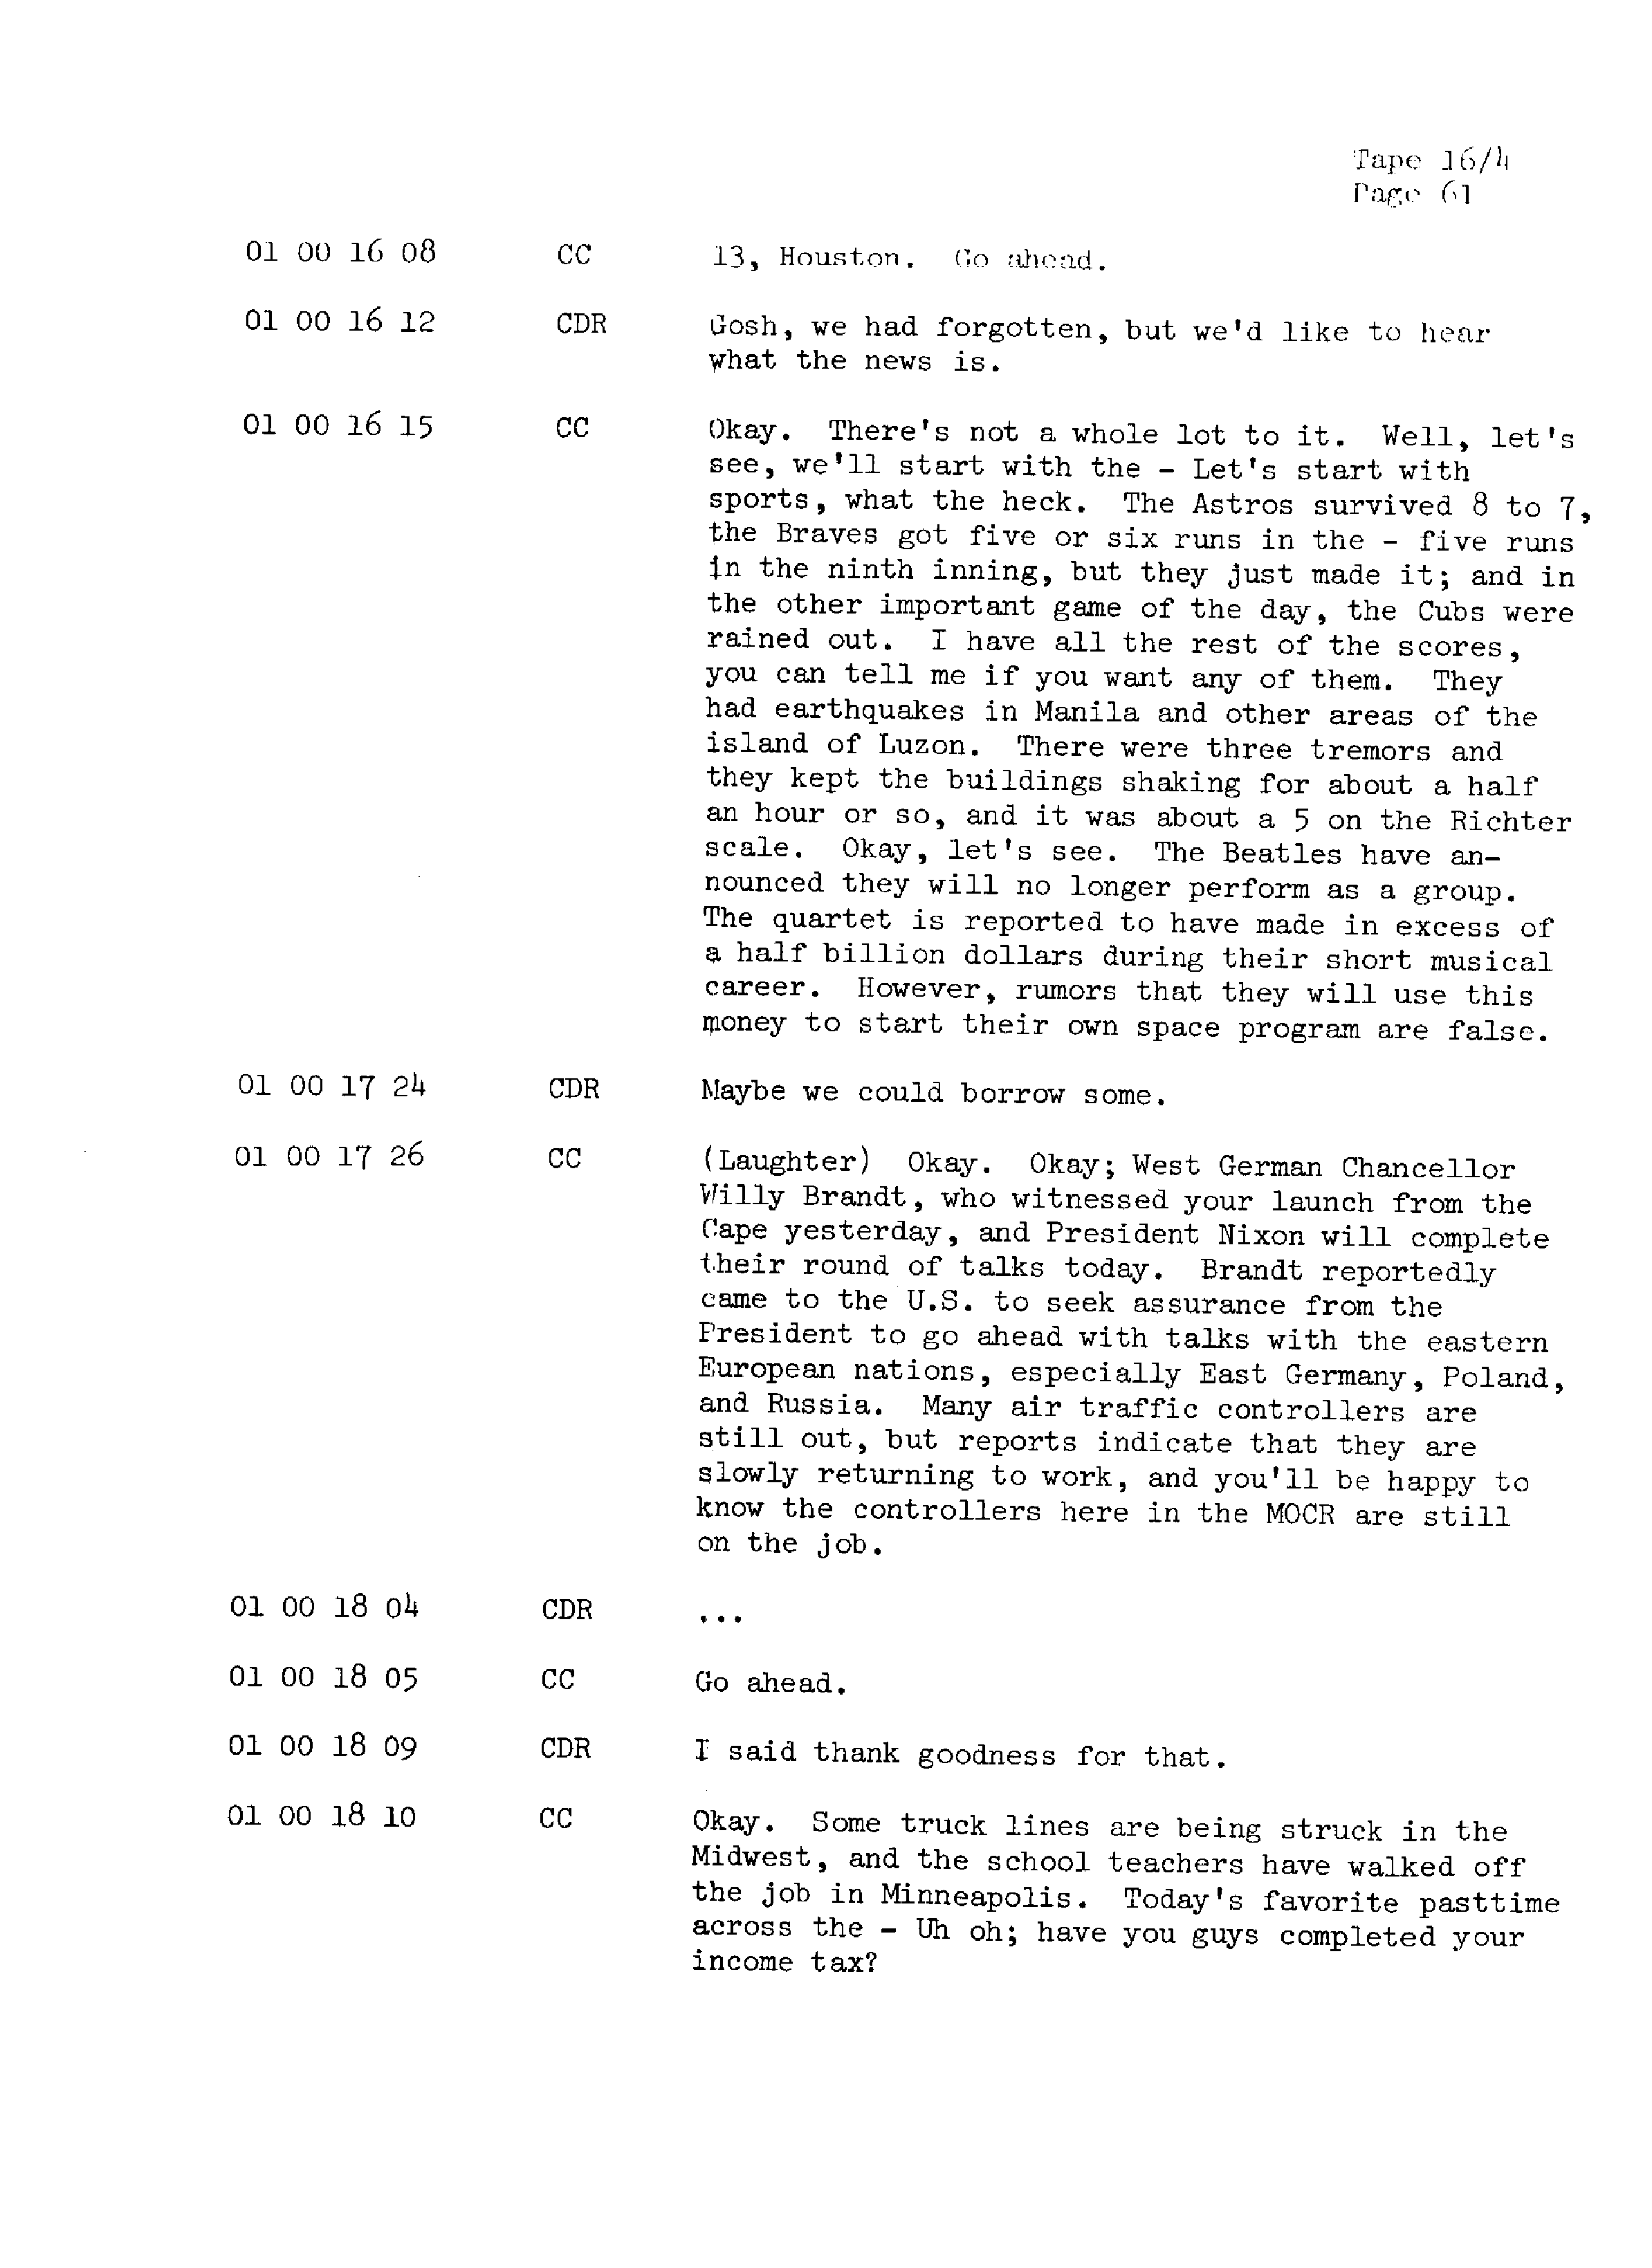 Page 68 of Apollo 13’s original transcript